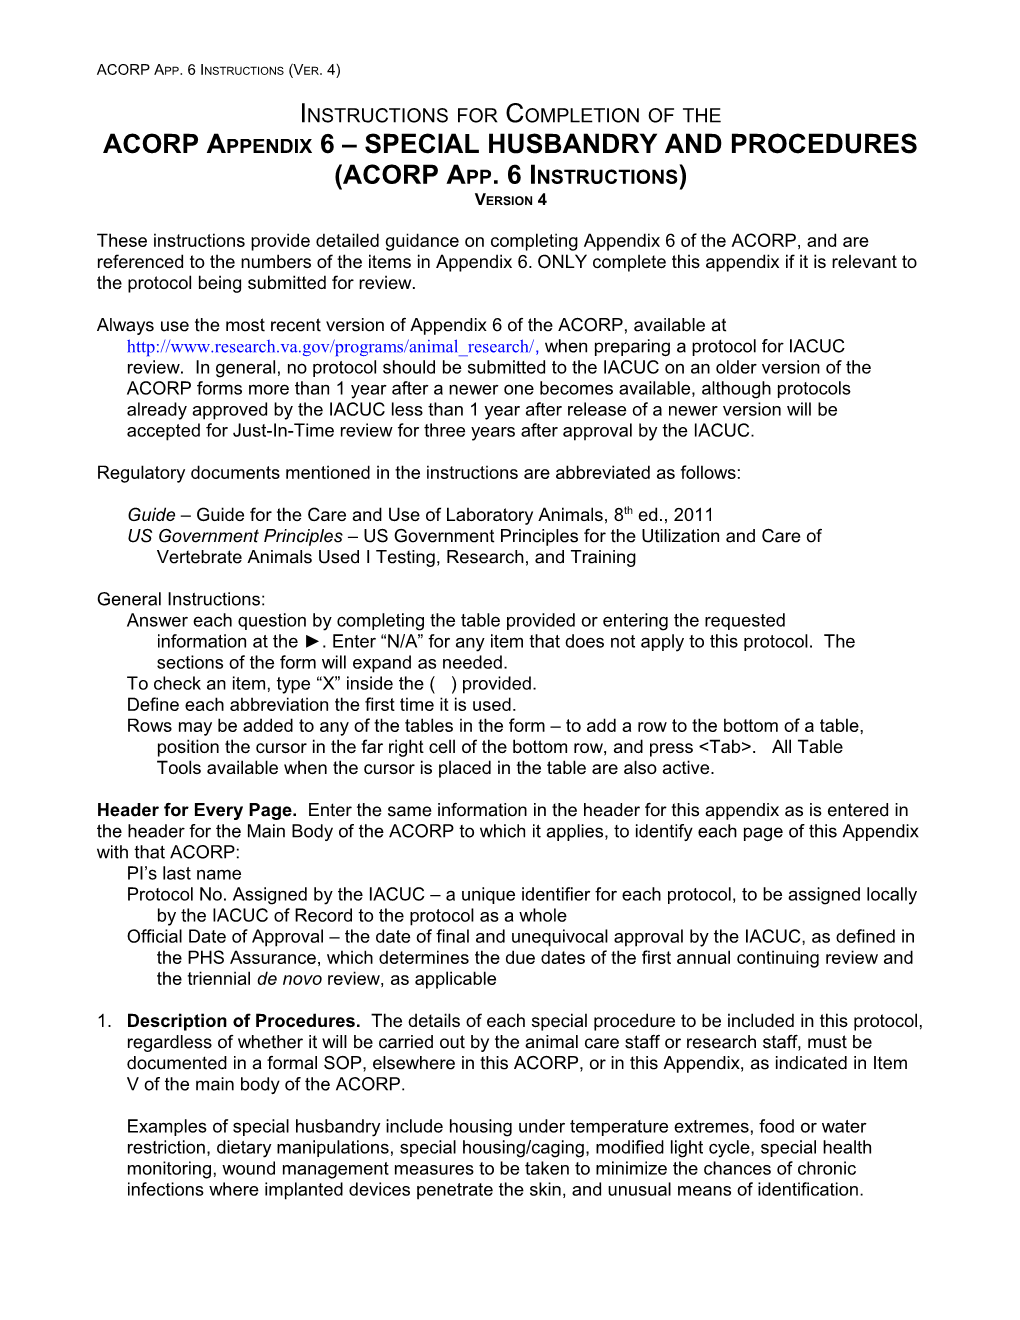 ACORP Appendix 6 (Portland VA Medical Center) Instructions